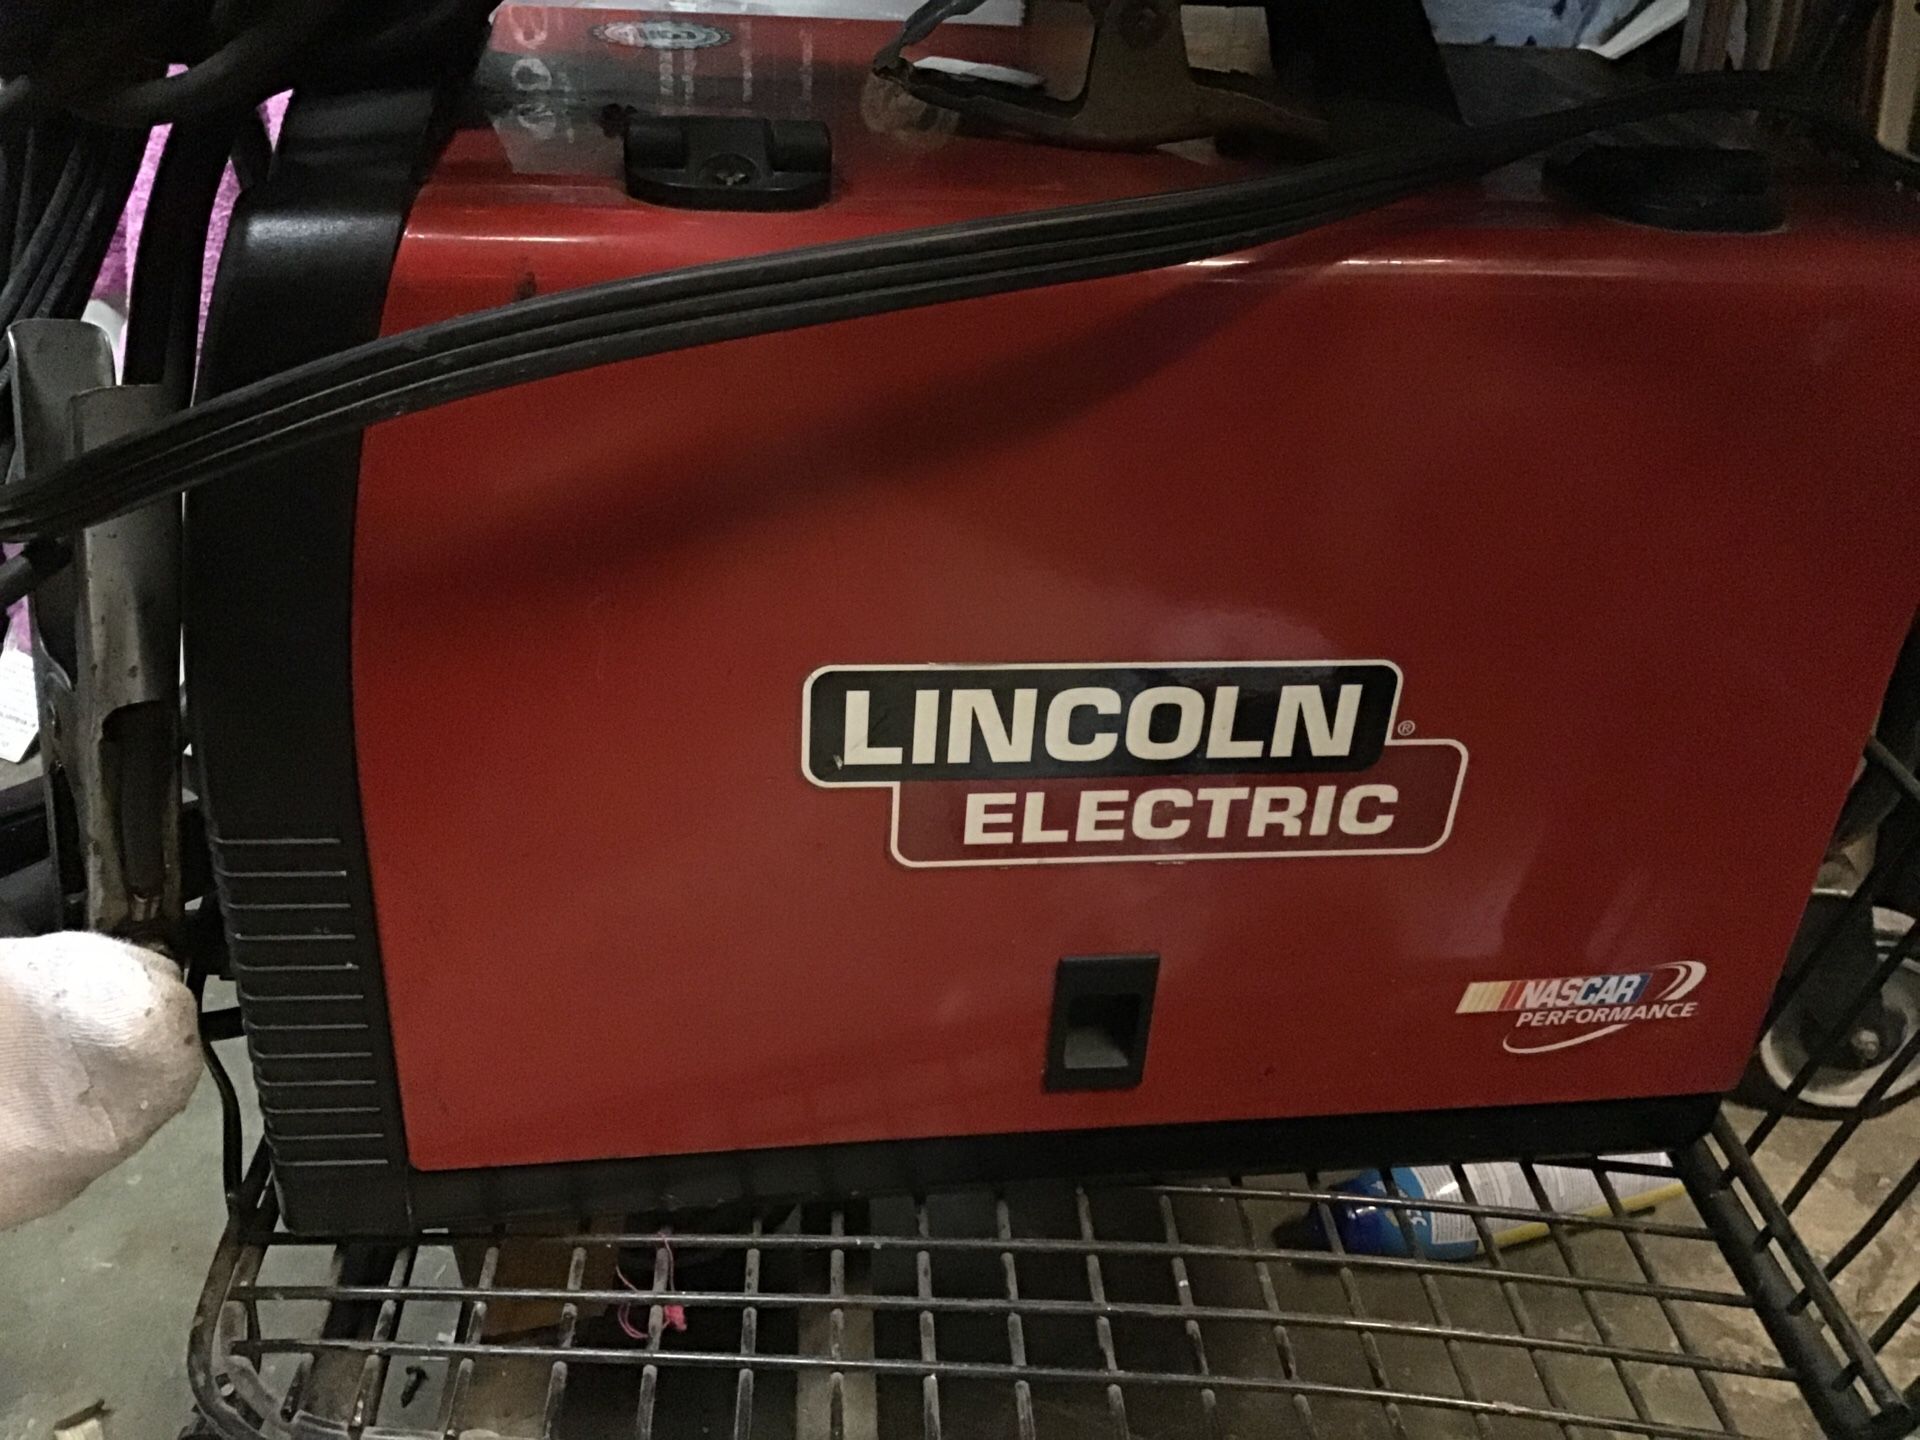 Electric welder tool